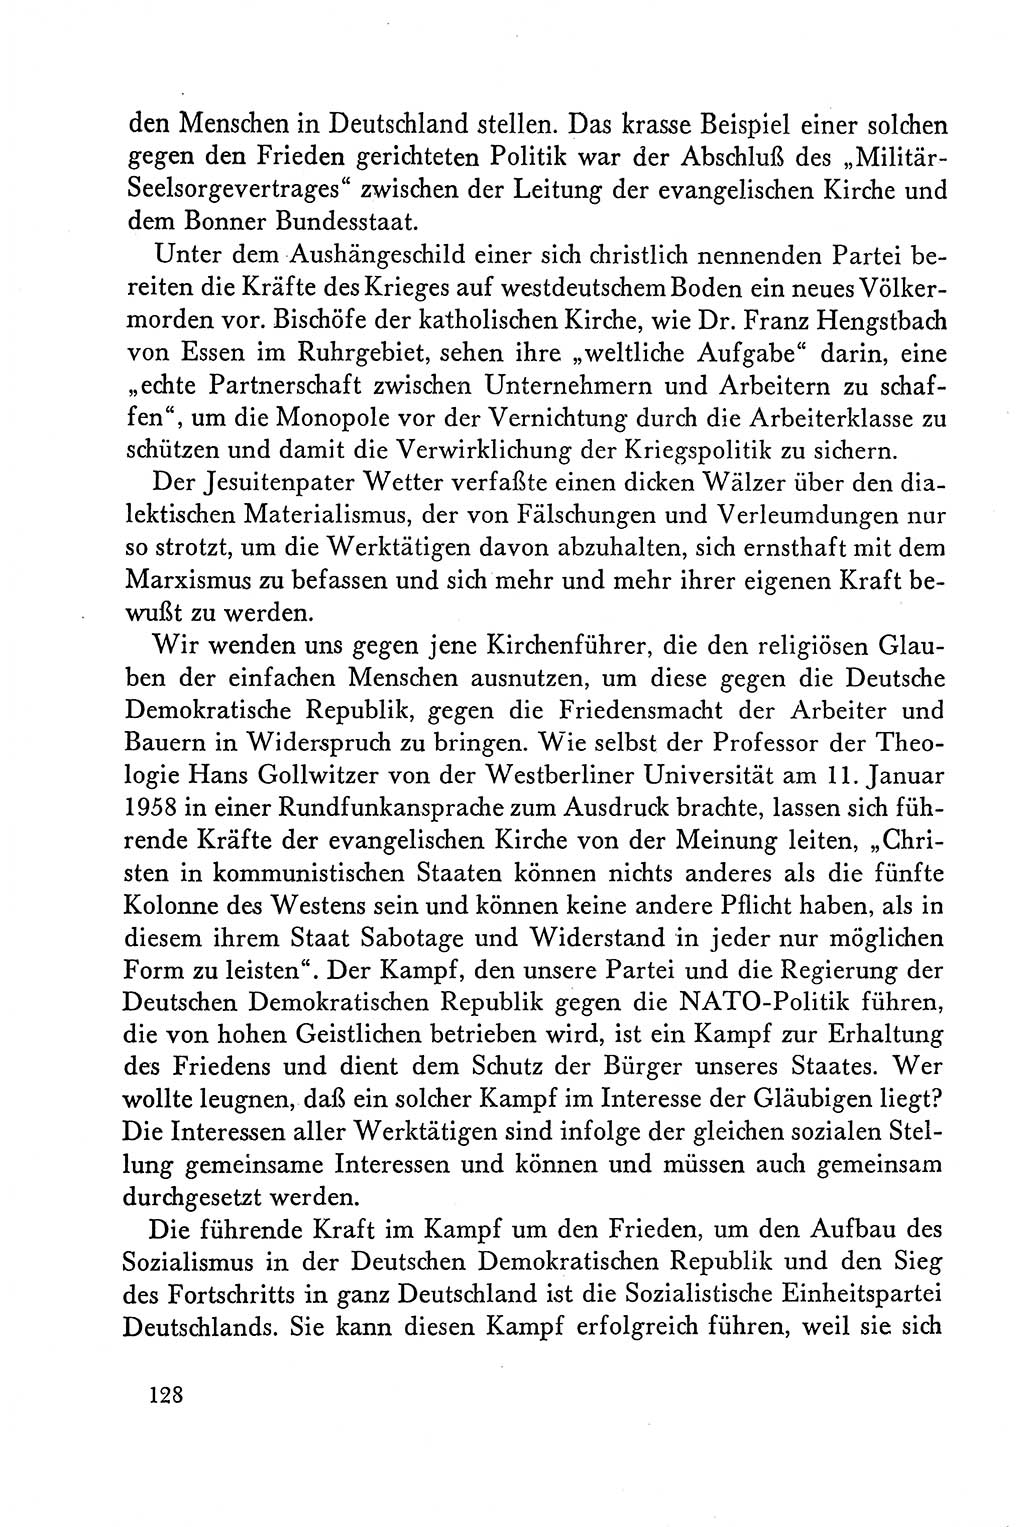 Dokumente der Sozialistischen Einheitspartei Deutschlands (SED) [Deutsche Demokratische Republik (DDR)] 1958-1959, Seite 128 (Dok. SED DDR 1958-1959, S. 128)